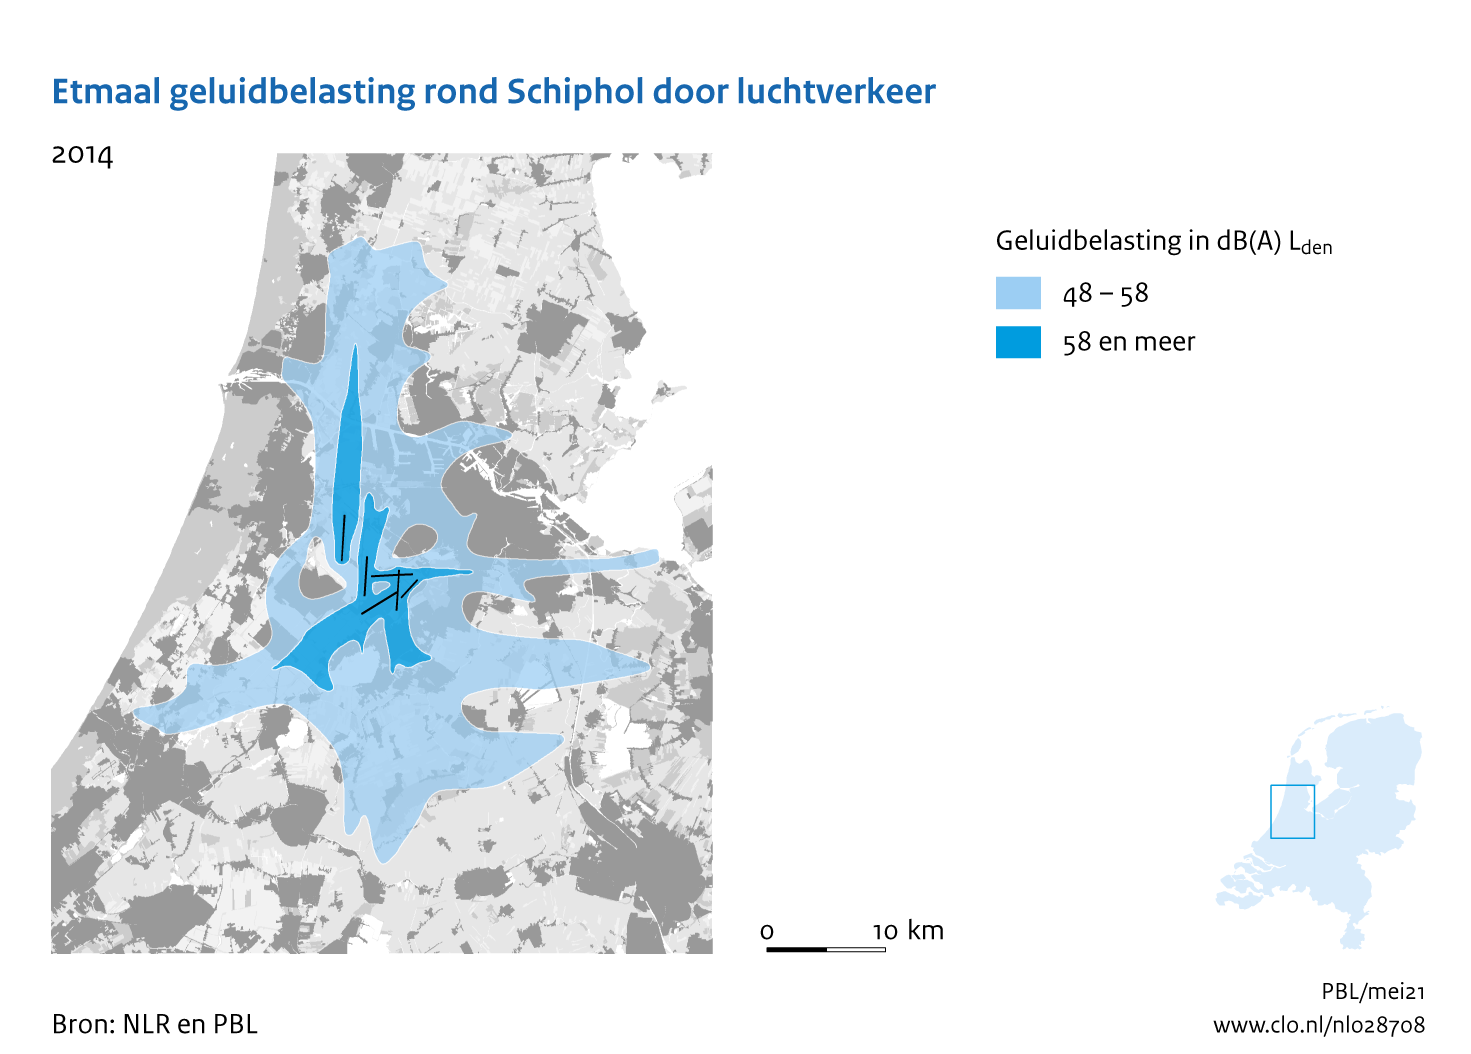 Figuur Etmaal geluidbelasting rond Schiphol door luchtverkeer, 2014. In de rest van de tekst wordt deze figuur uitgebreider uitgelegd.